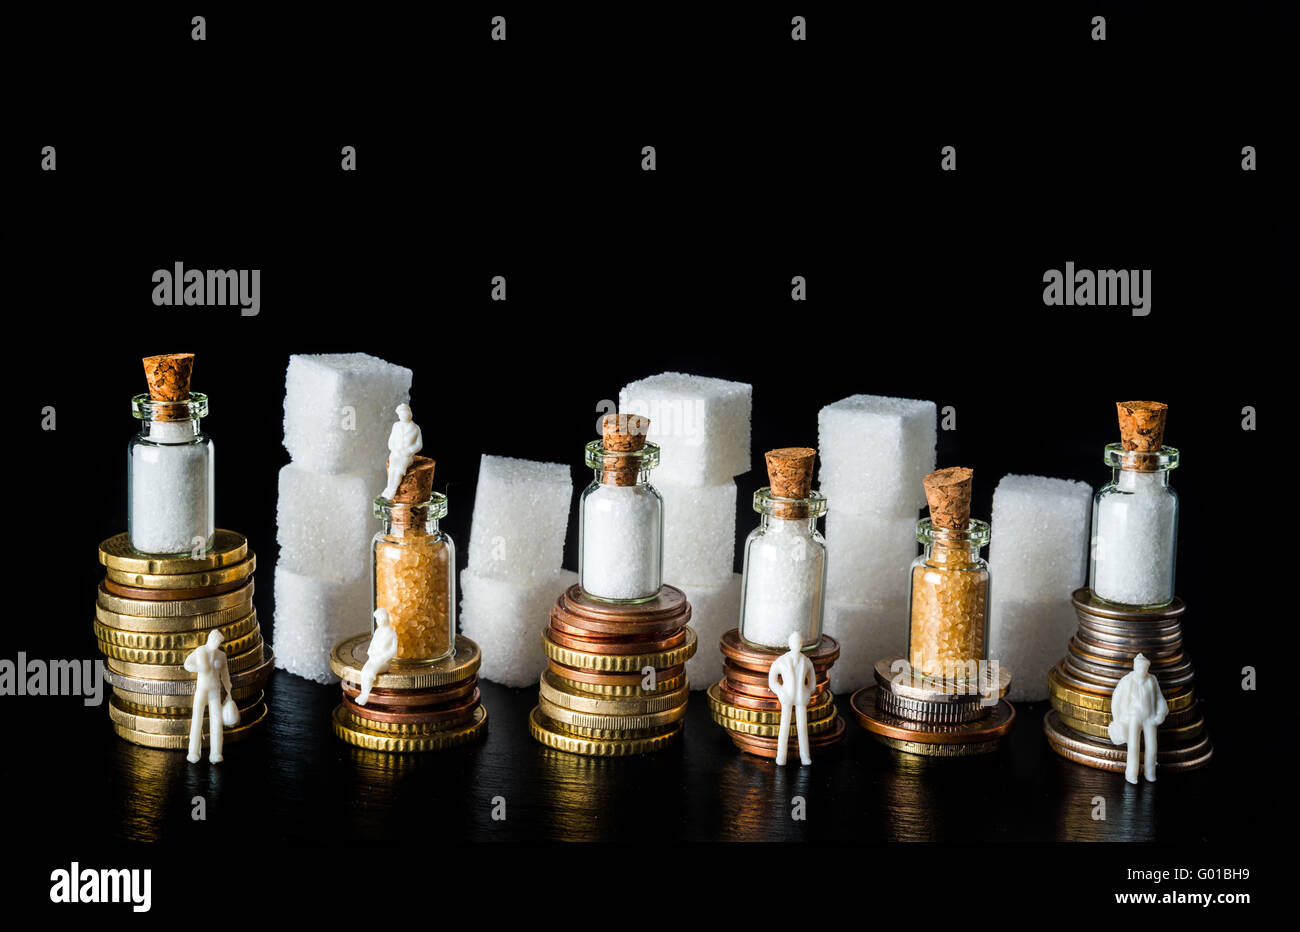 Des piles de pièces de monnaie avec des morceaux de sucre et des bouteilles remplies de sucre sur le dessus, symbolisant l'impôt sur le sucre, sur fond d'ardoise noire Banque D'Images